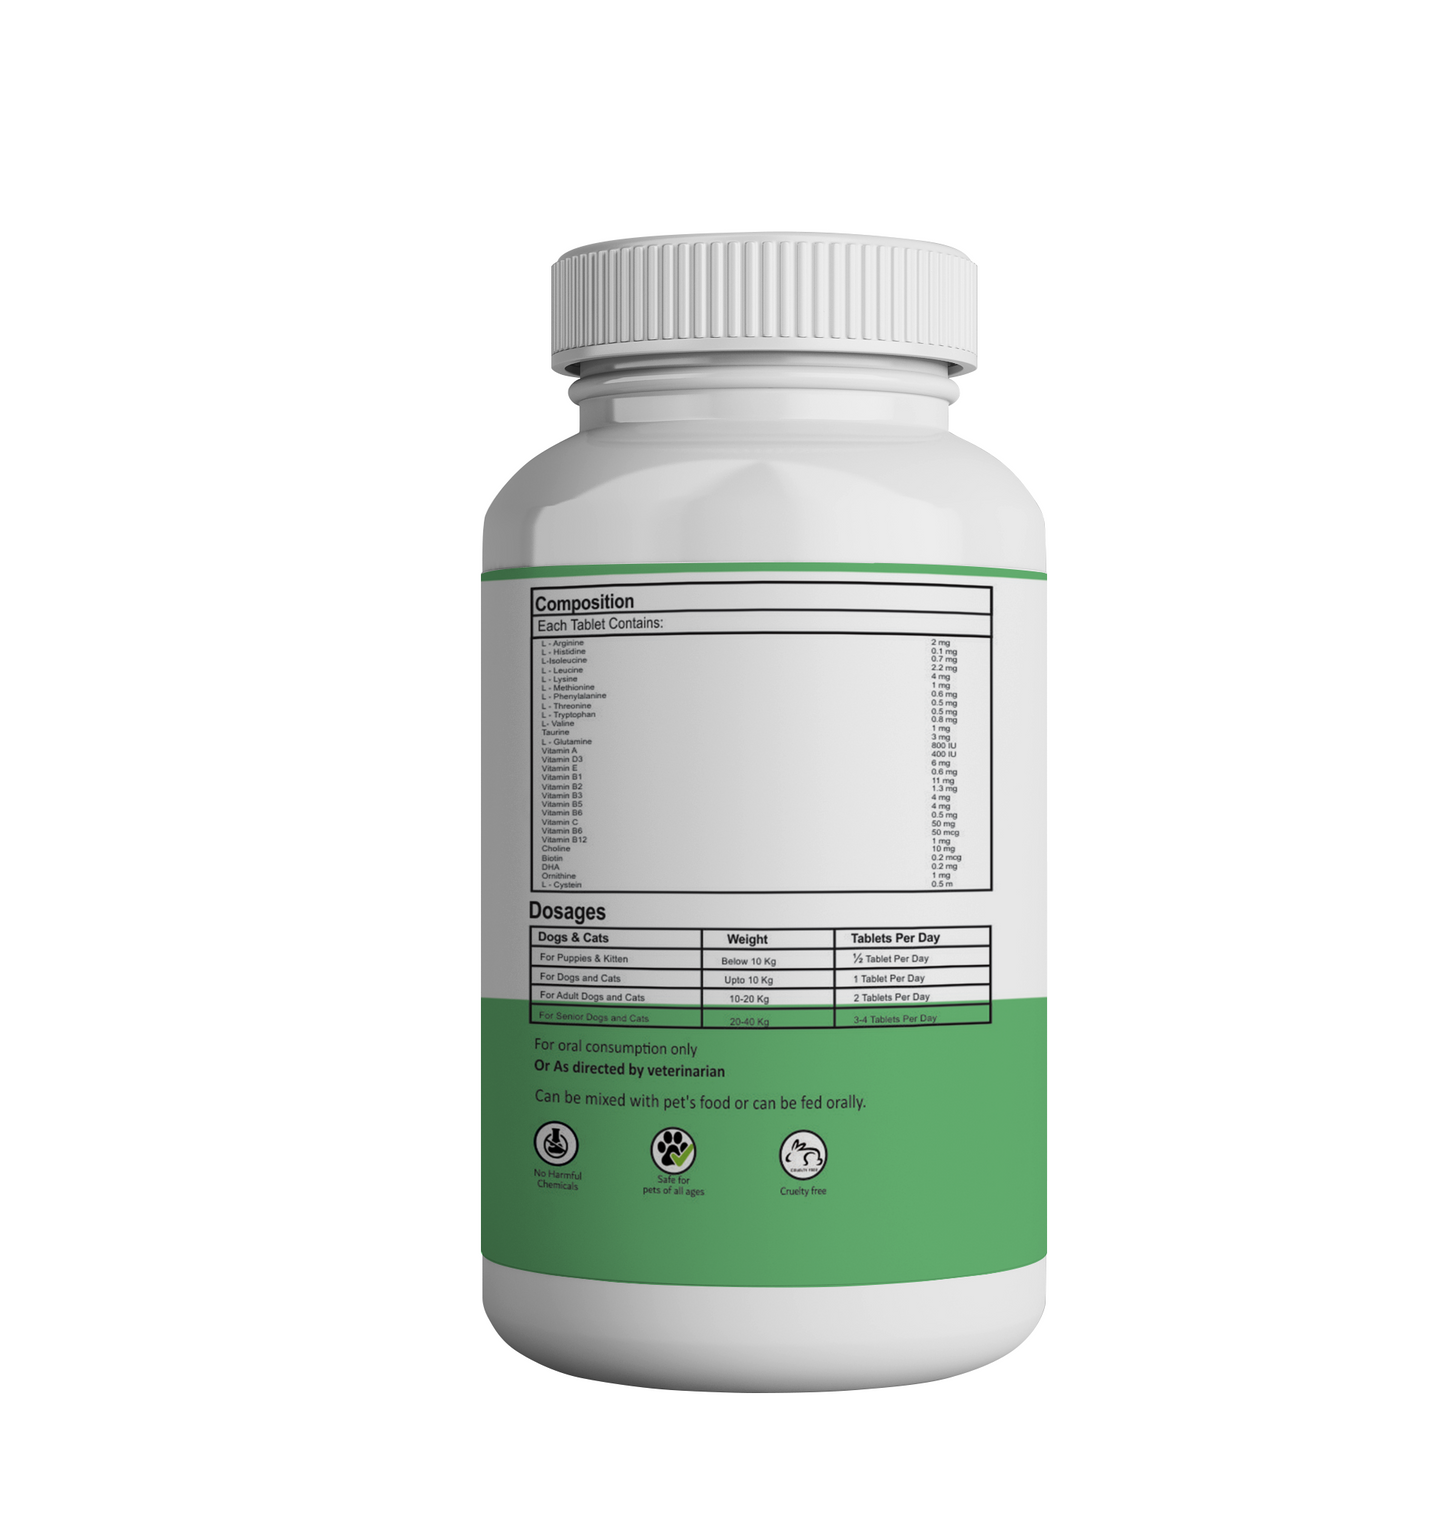 Amino Acid Multivitamin Tablets for Pets-Aniamor |120 Tablets